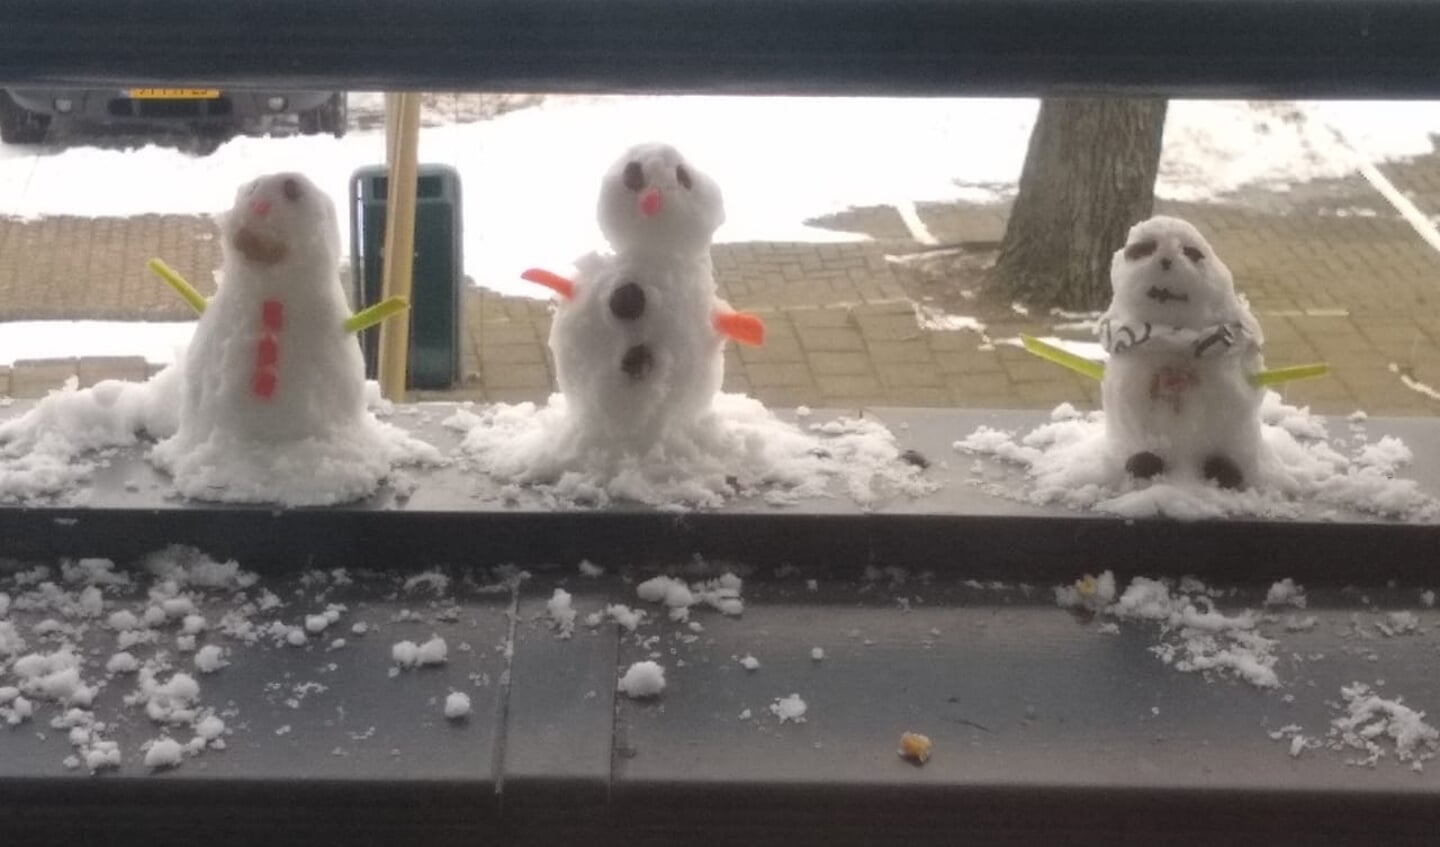 De Braziliaanse vriendin van Dolf Wildschut had nooit eerder sneeuw gezien, en wilde voor het eerst een sneeuwpop maken. "Dit is het resultaat van haar werk en omdat het nog even wennen was in de kou maakte ze de sneeuwpoppen op ons balkon, dat nog dichtbij de warmte was."